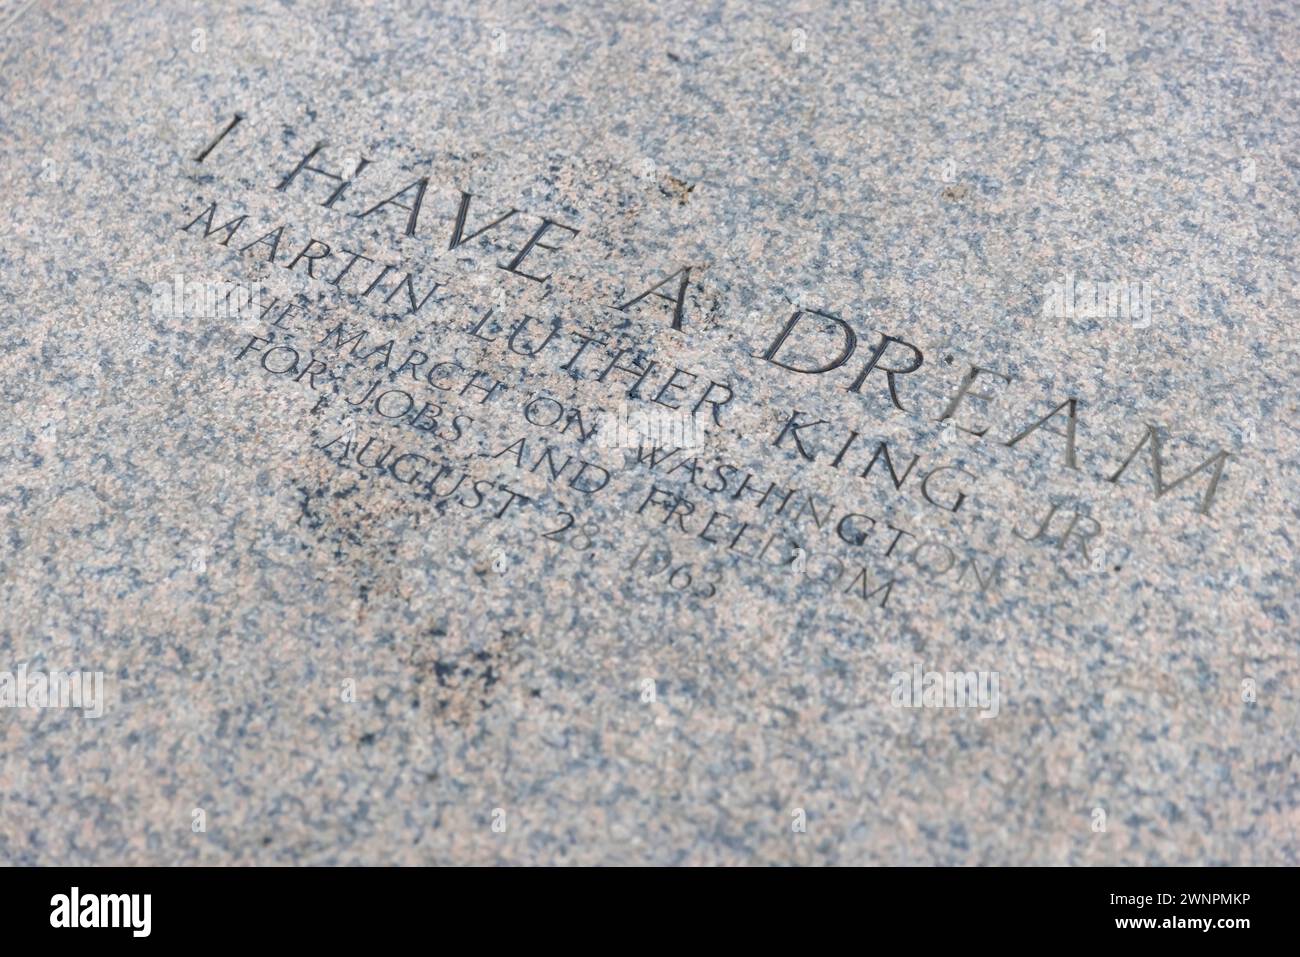 Le site regardant vers le Washington Monument où Martin Luther King a prononcé son célèbre discours « J'ai Un rêve ». Banque D'Images